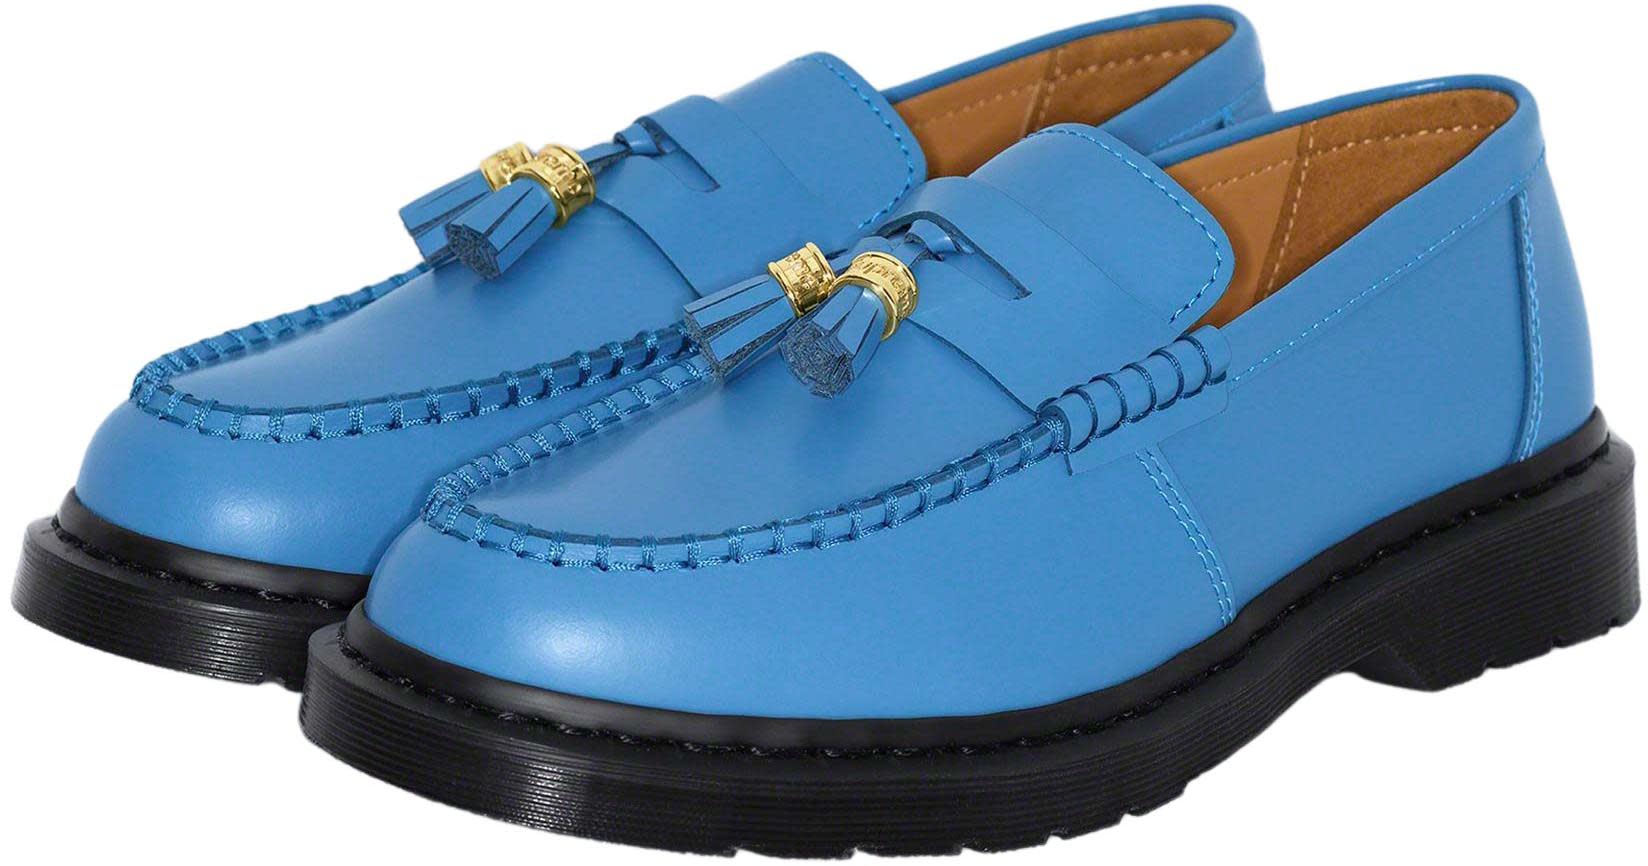 Supreme Dr. Martens Penton Tassel Loafer靴